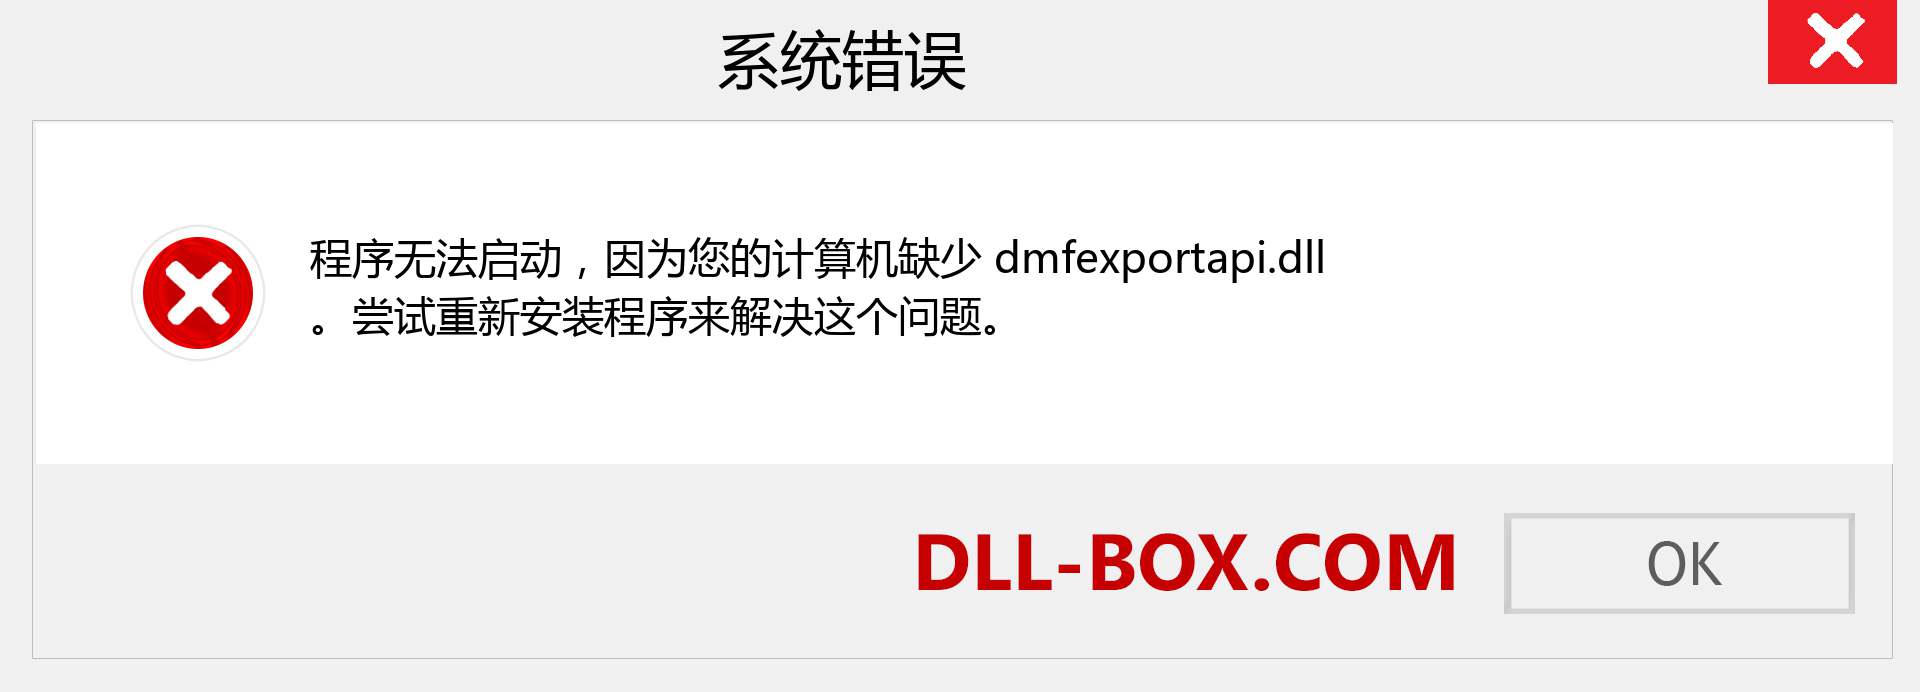 dmfexportapi.dll 文件丢失？。 适用于 Windows 7、8、10 的下载 - 修复 Windows、照片、图像上的 dmfexportapi dll 丢失错误